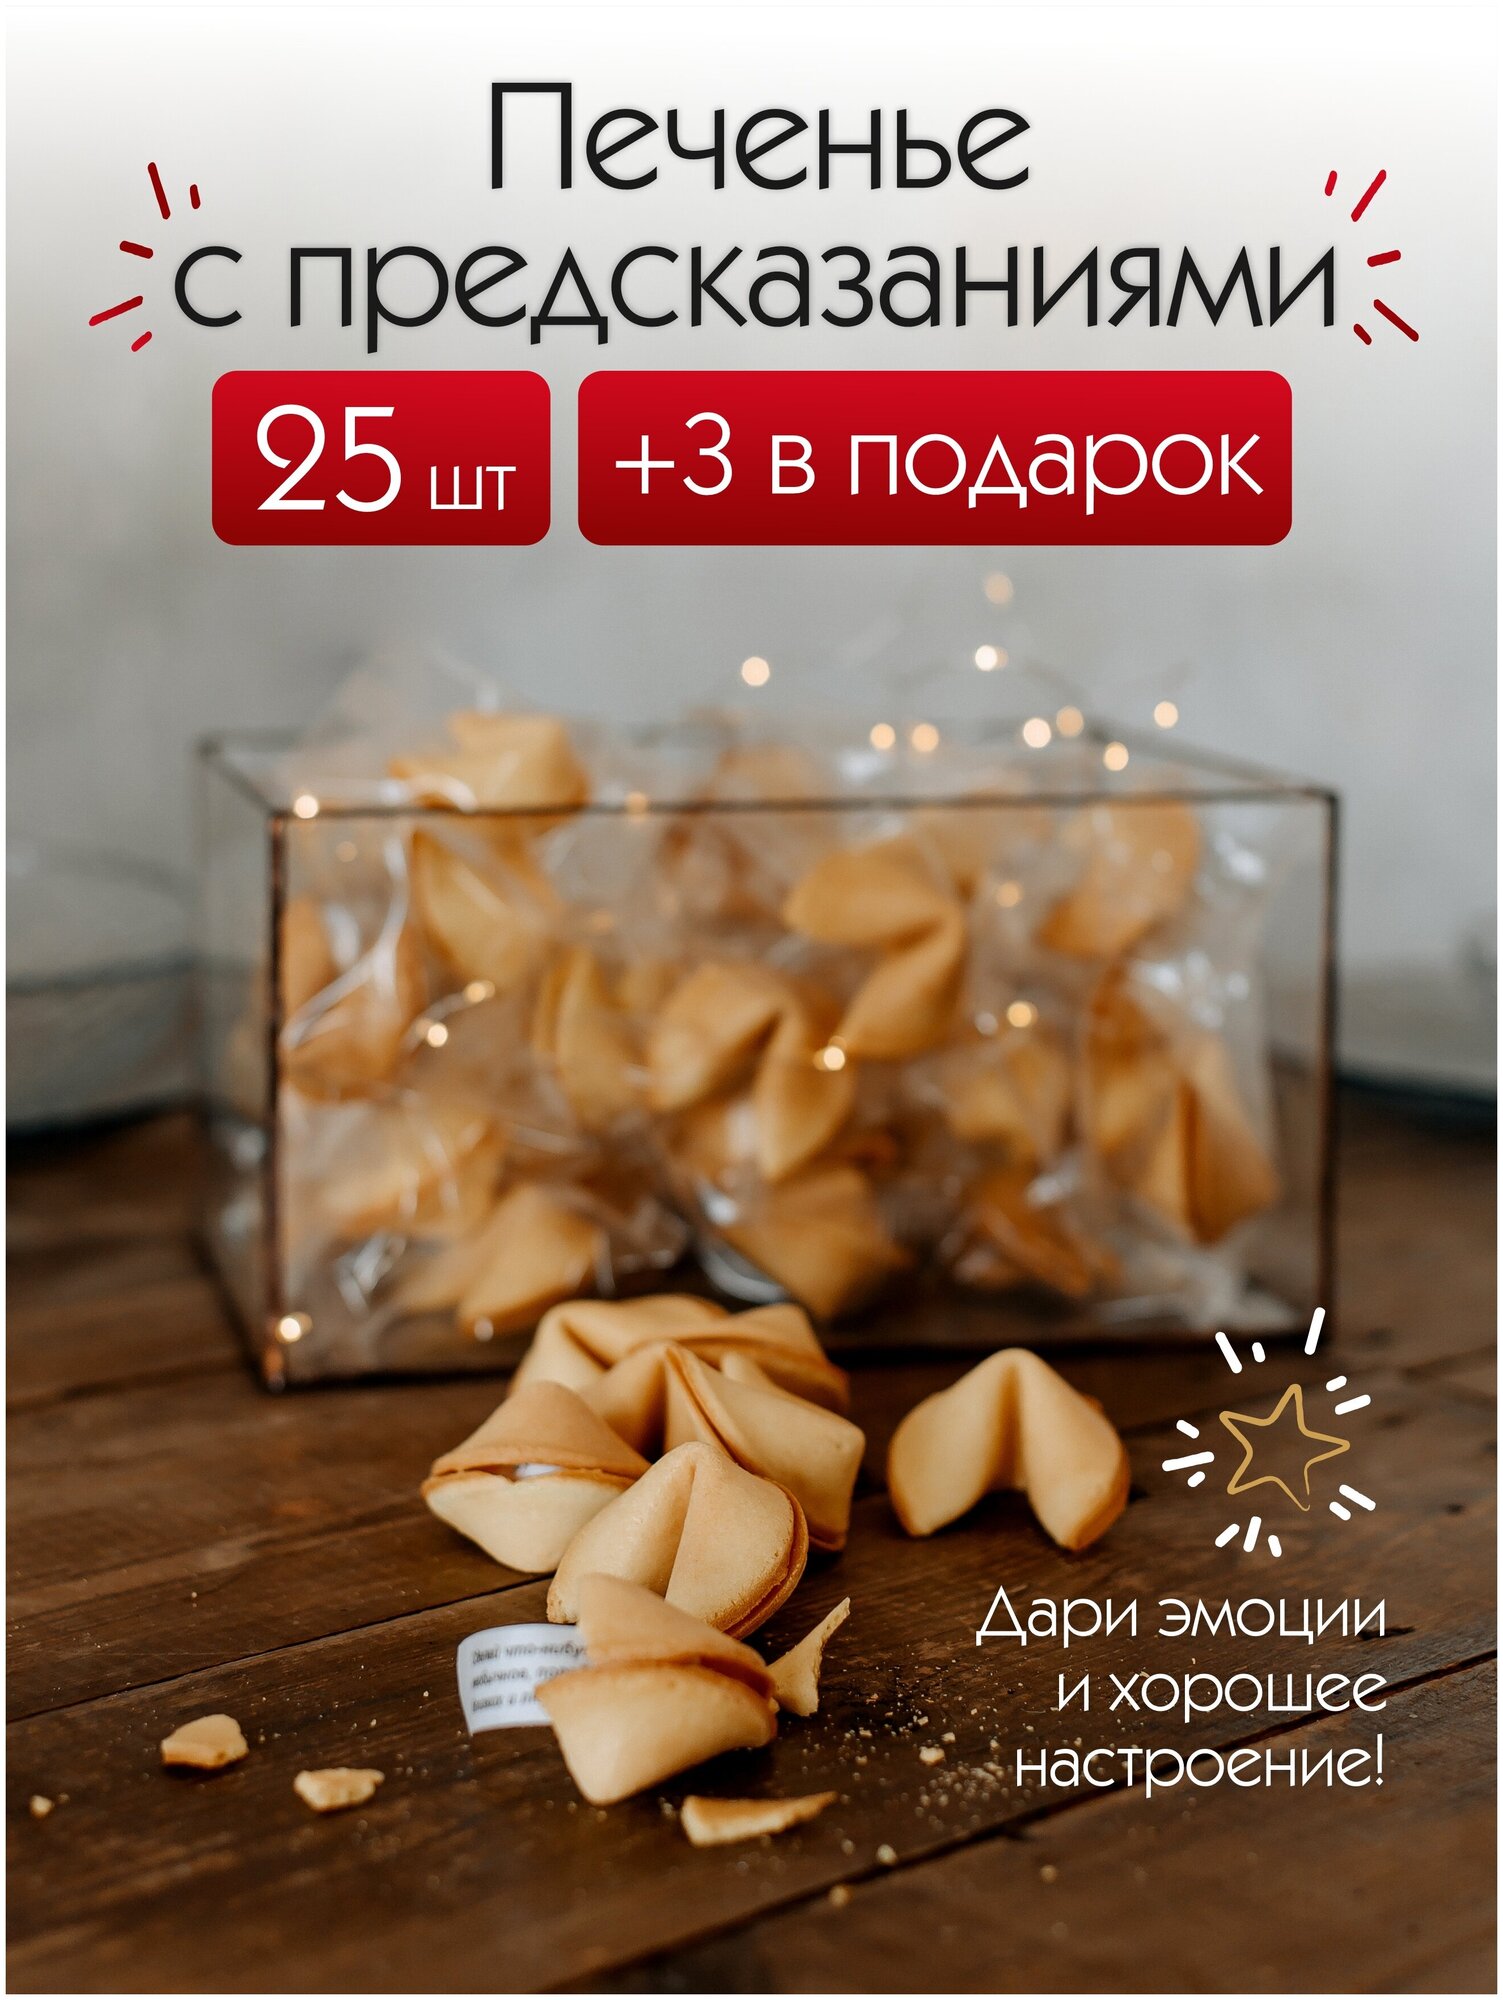 Печенье с предсказаниями и пожеланиями, Подарок для взрослых, сюрприз для мужчин и женщин 25 штук 150 г